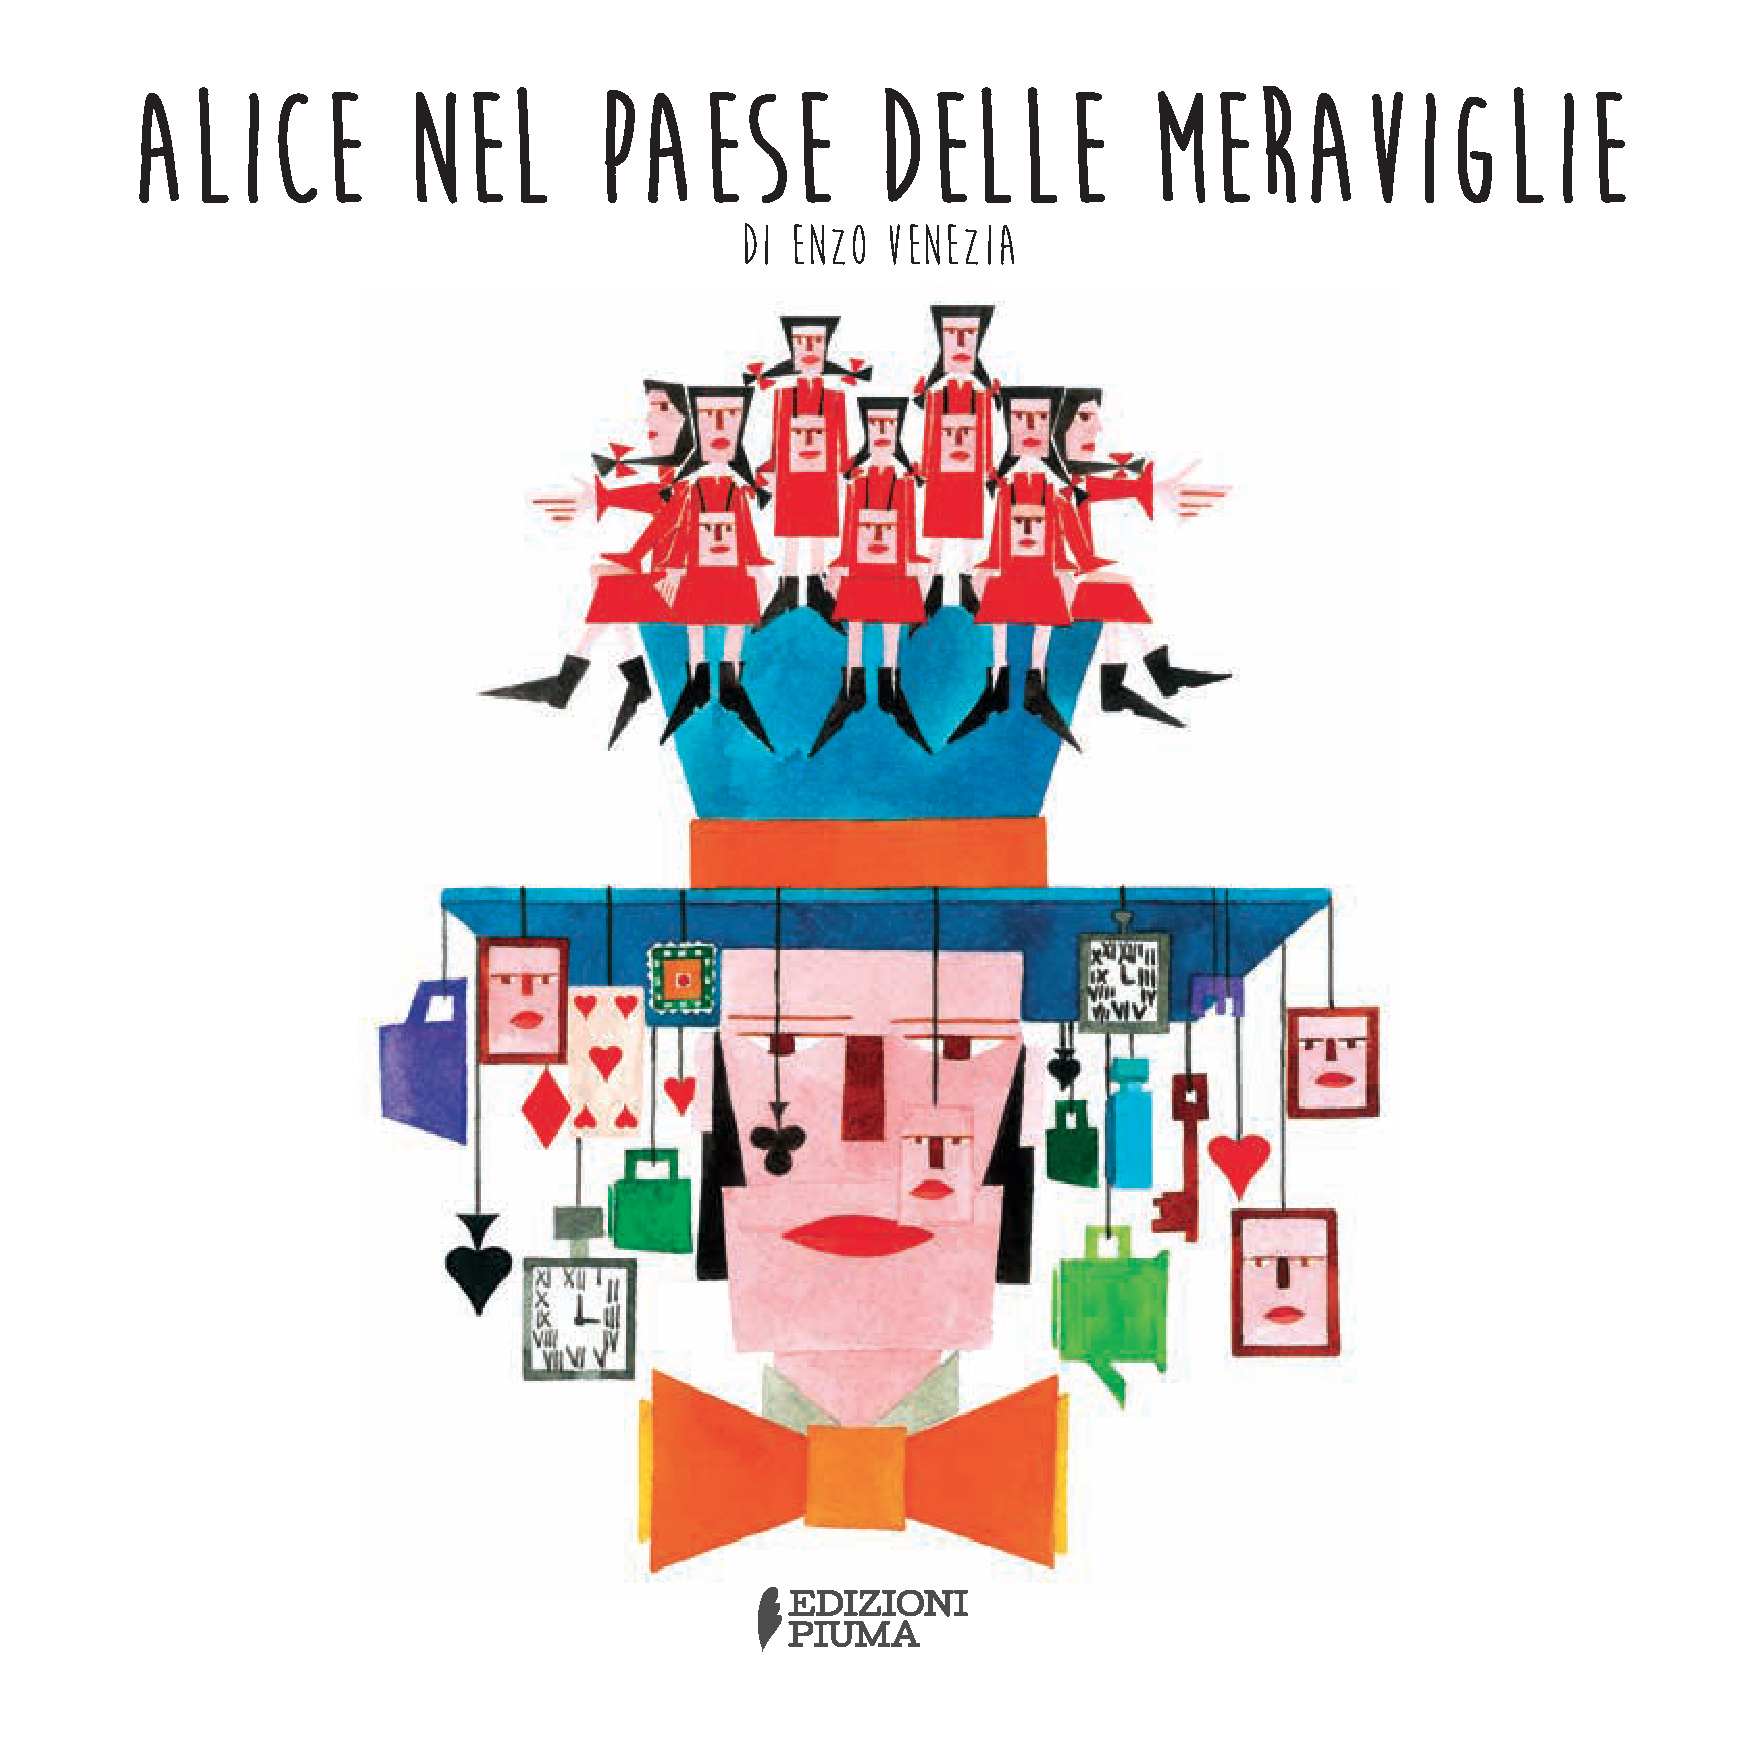 “Alice nel paese delle meraviglie”, un grande classico riscritto in rime e filastrocche da Enzo Venezia per Edizioni Piuma